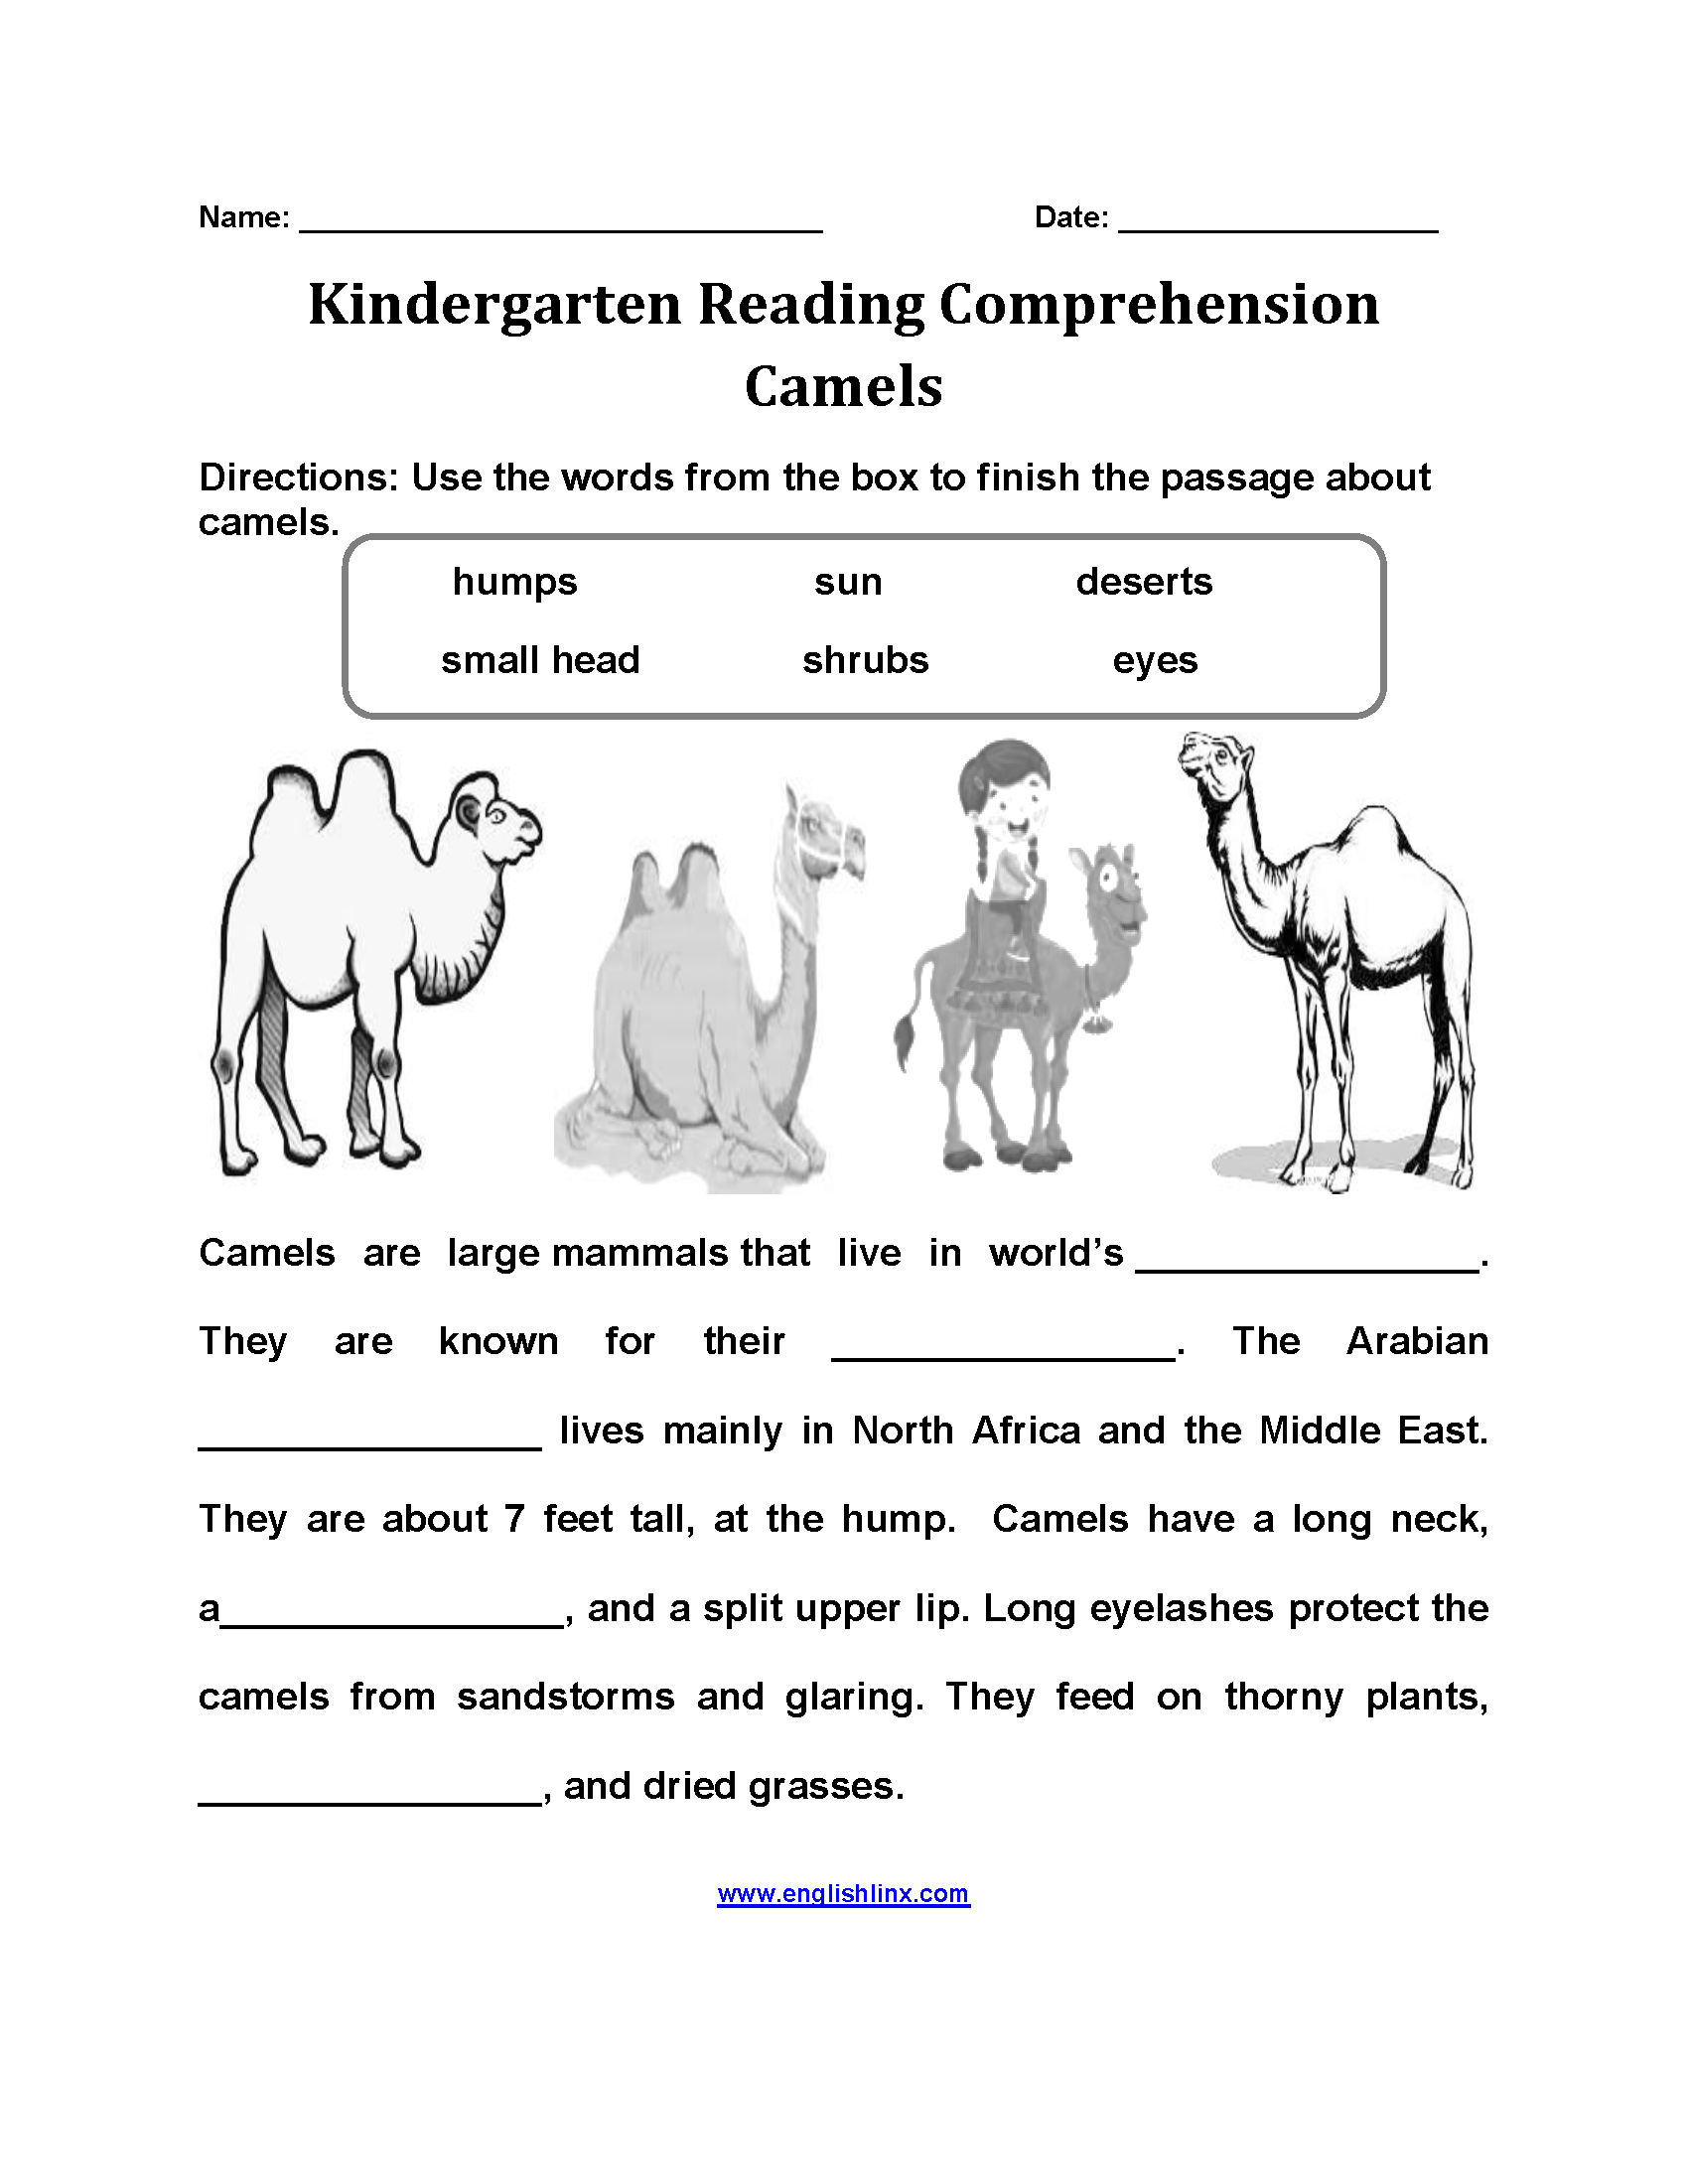 Camels Kindergarten Reading Comprehension Worksheets